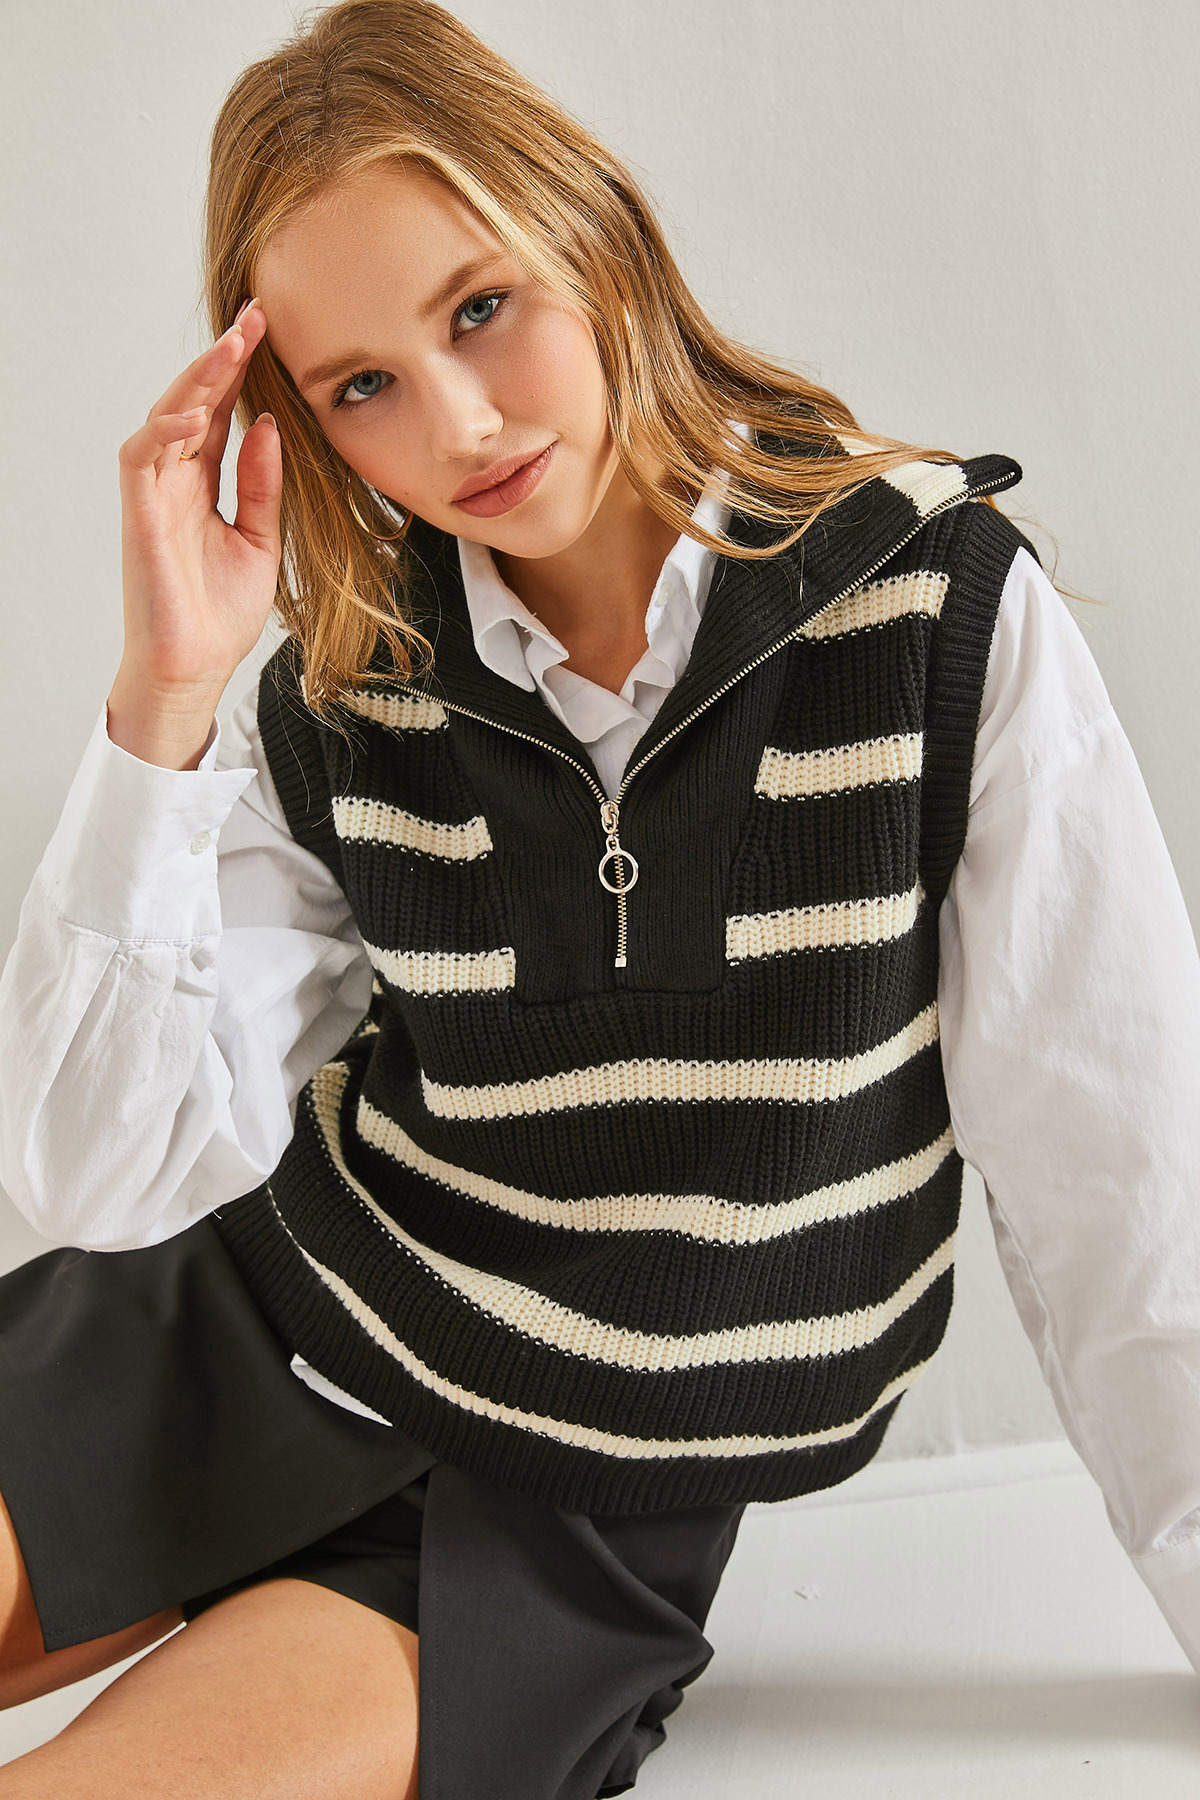 Bianco Lucci Women's Turtleneck Zipper Knitwear Striped Sweater